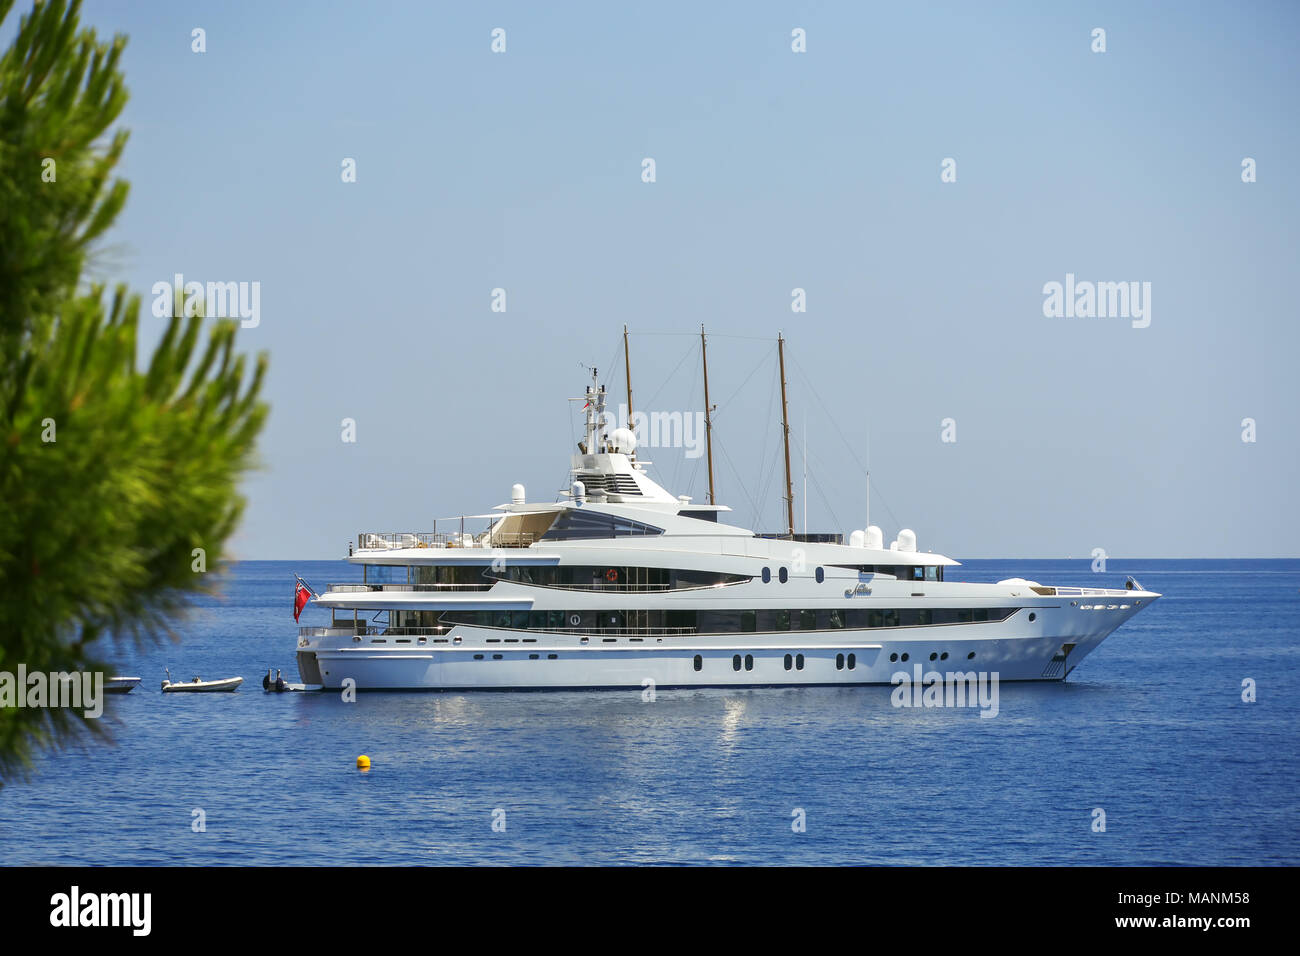 Bateau yacht de voile en mer Méditerranée près de Côte d'Azur, Monaco Banque D'Images